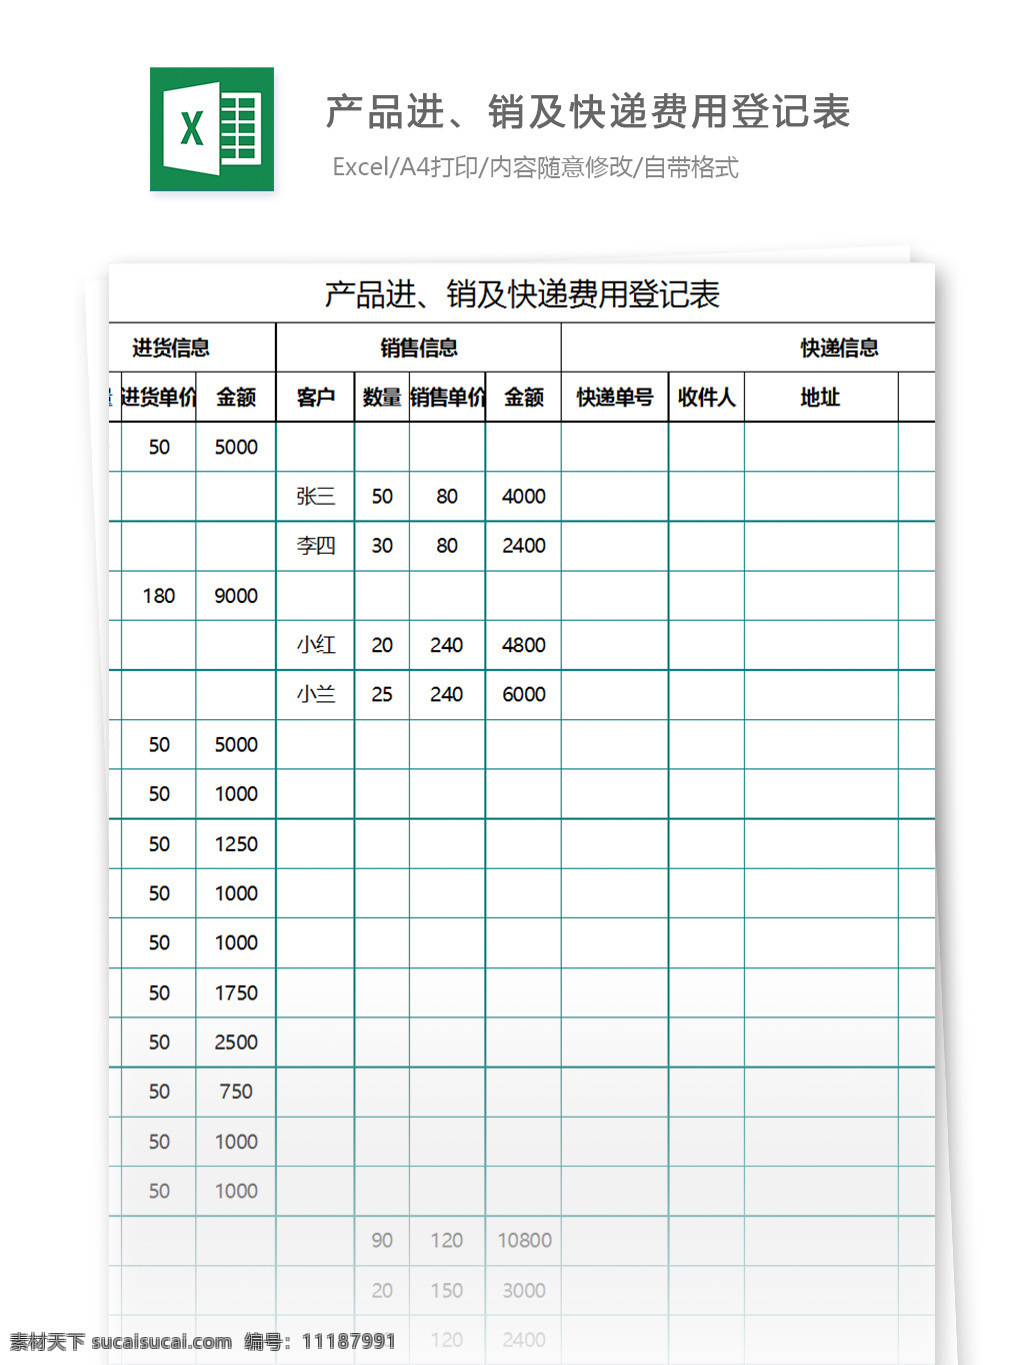 产品进 销 快递 费用 登记表 excel 表格 表格模板 图表 表格设计 明细表 包裹 收件 发件 寄件